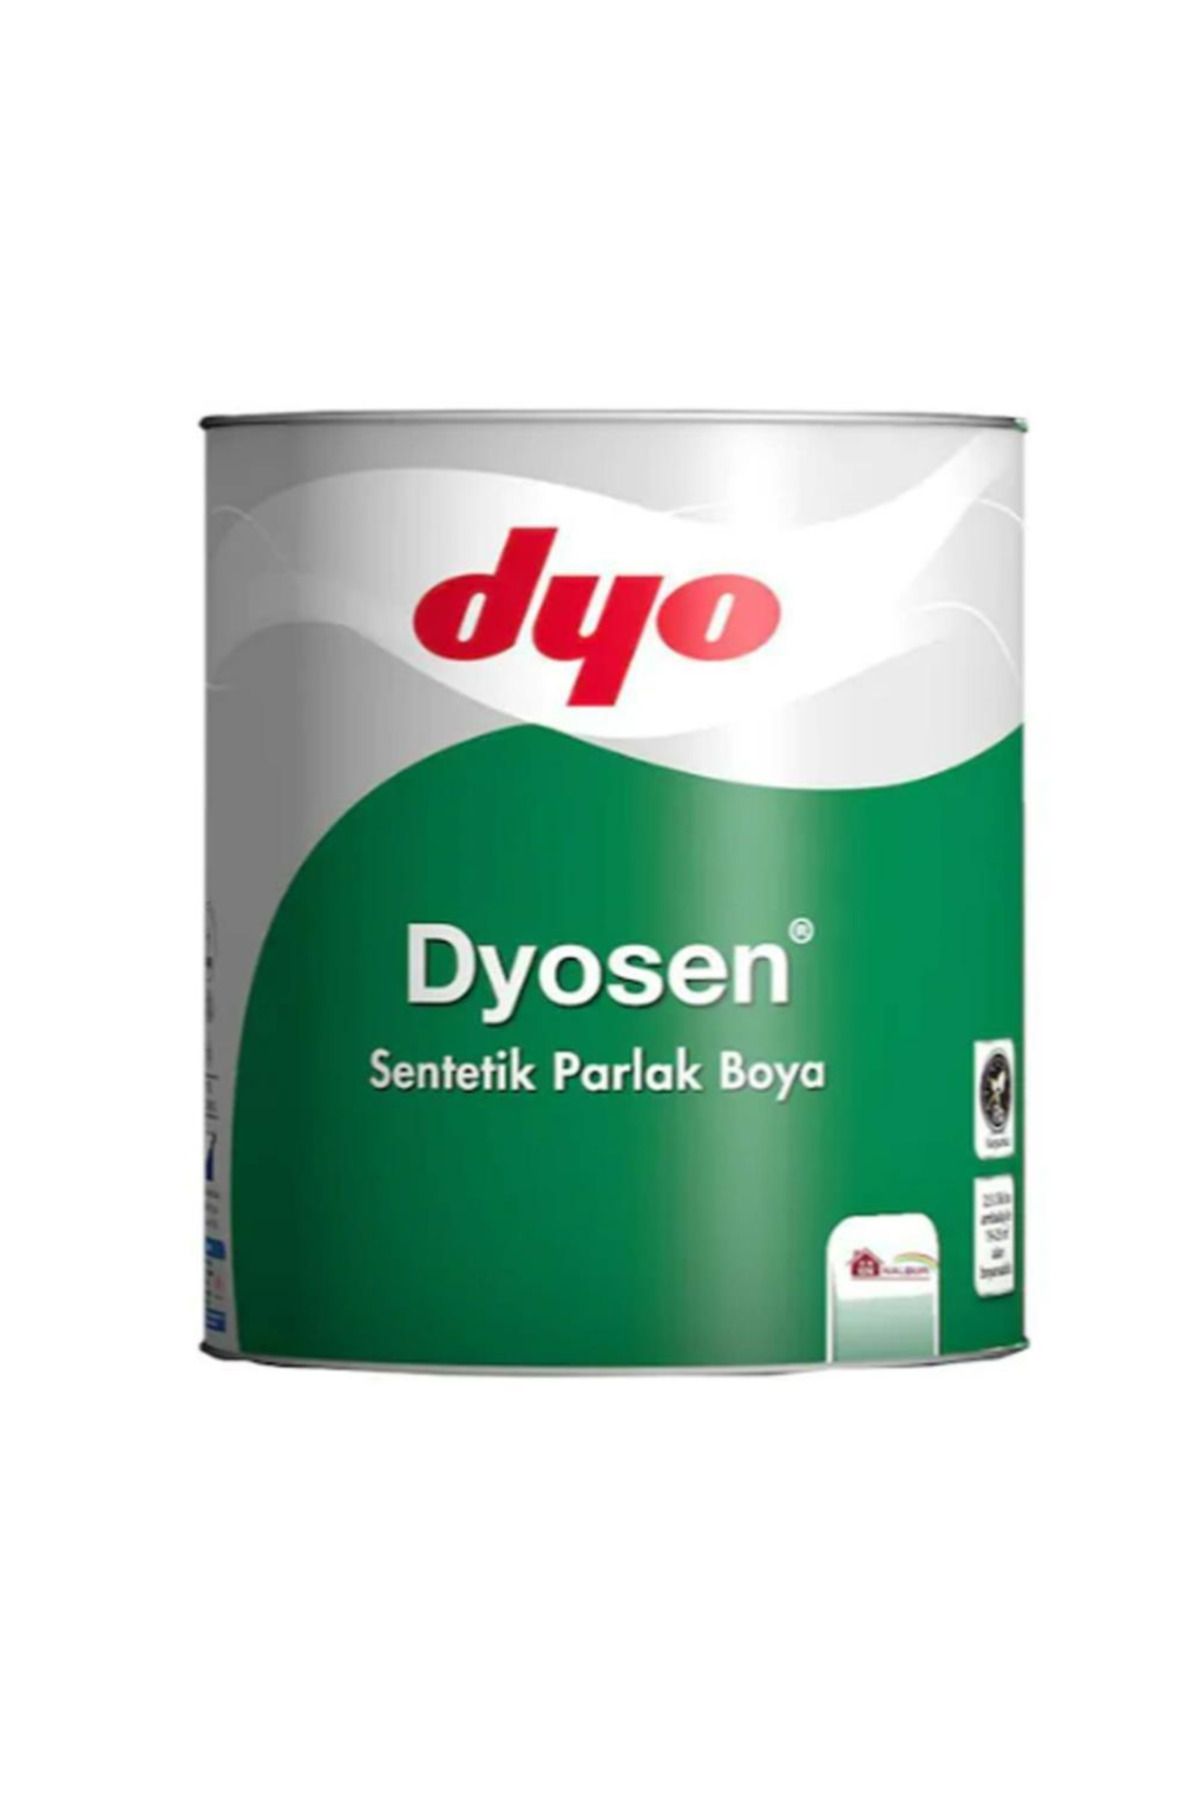 Dyo Dyosen Duman 0.75 Lt 036.7129.18